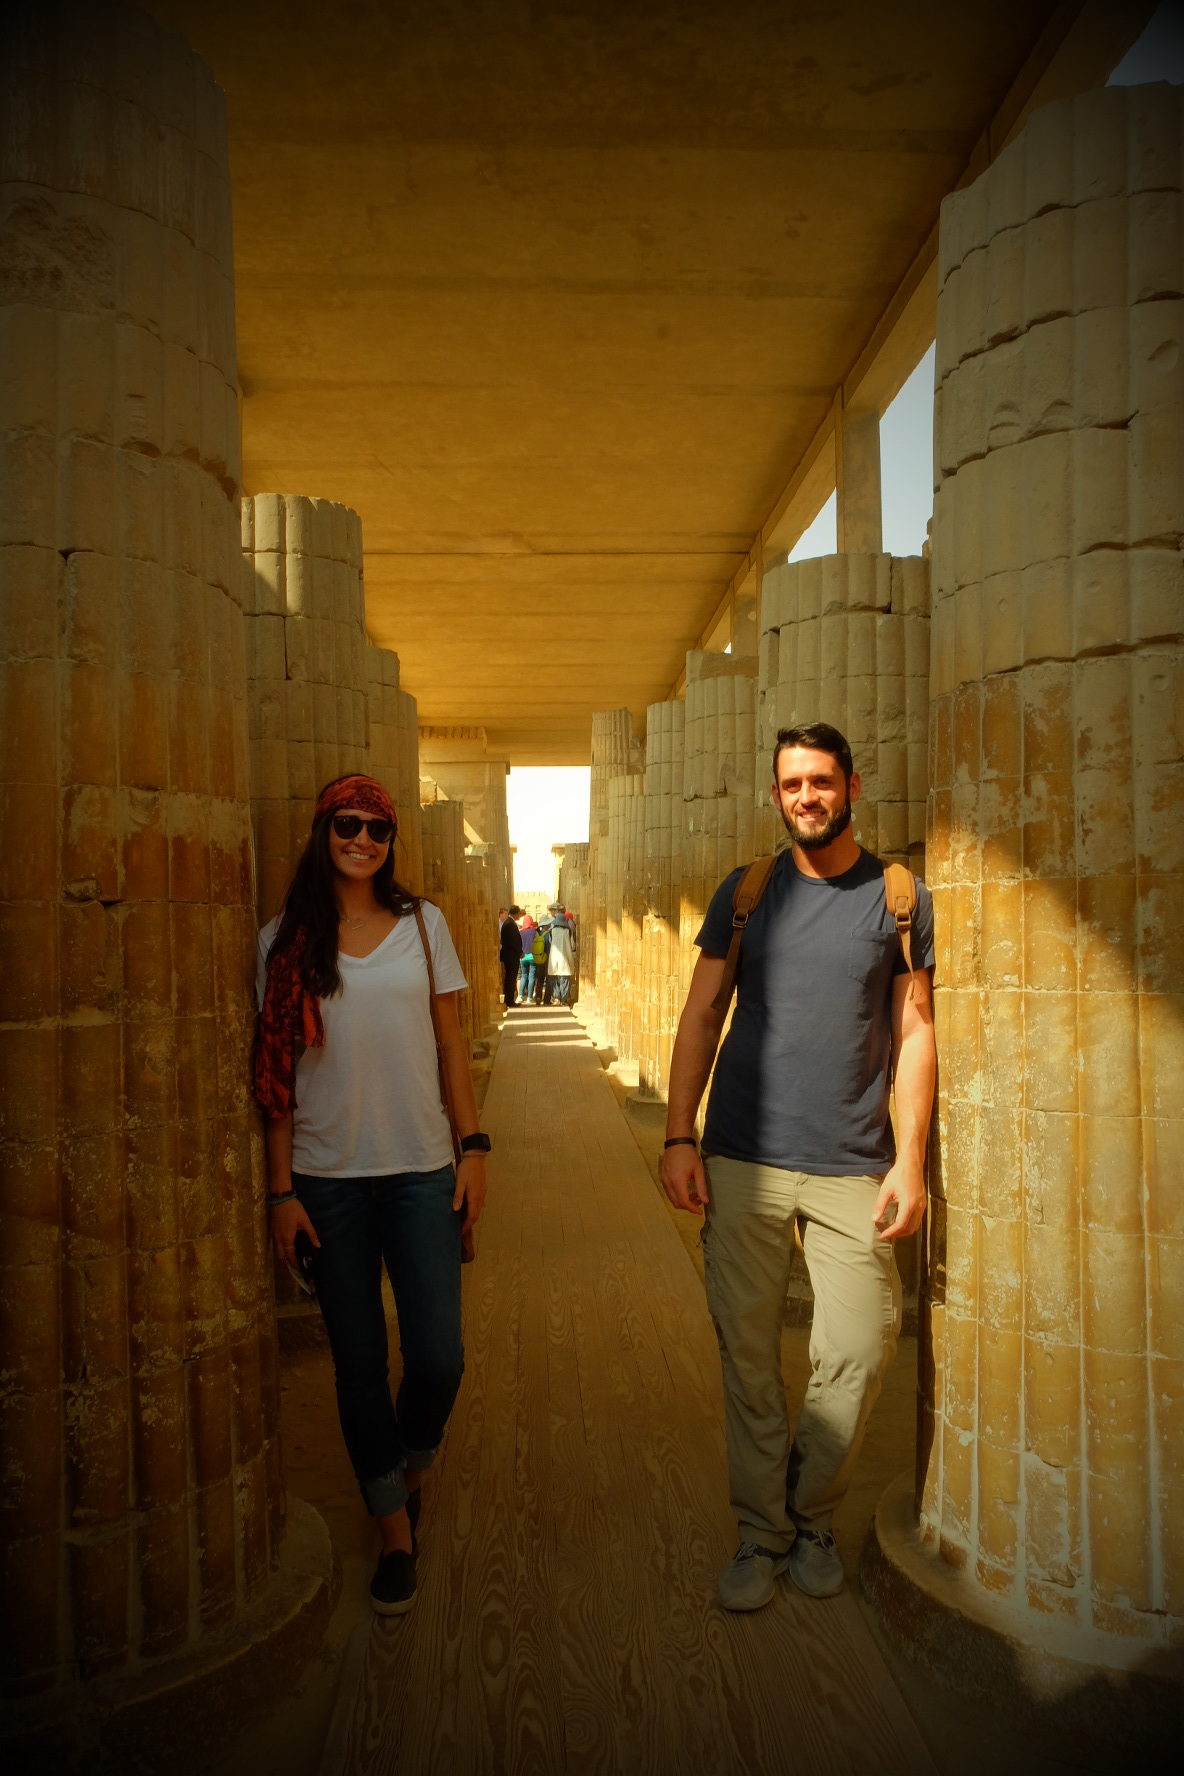 IMG 1713 e1513942369221 - Exploring Egypt